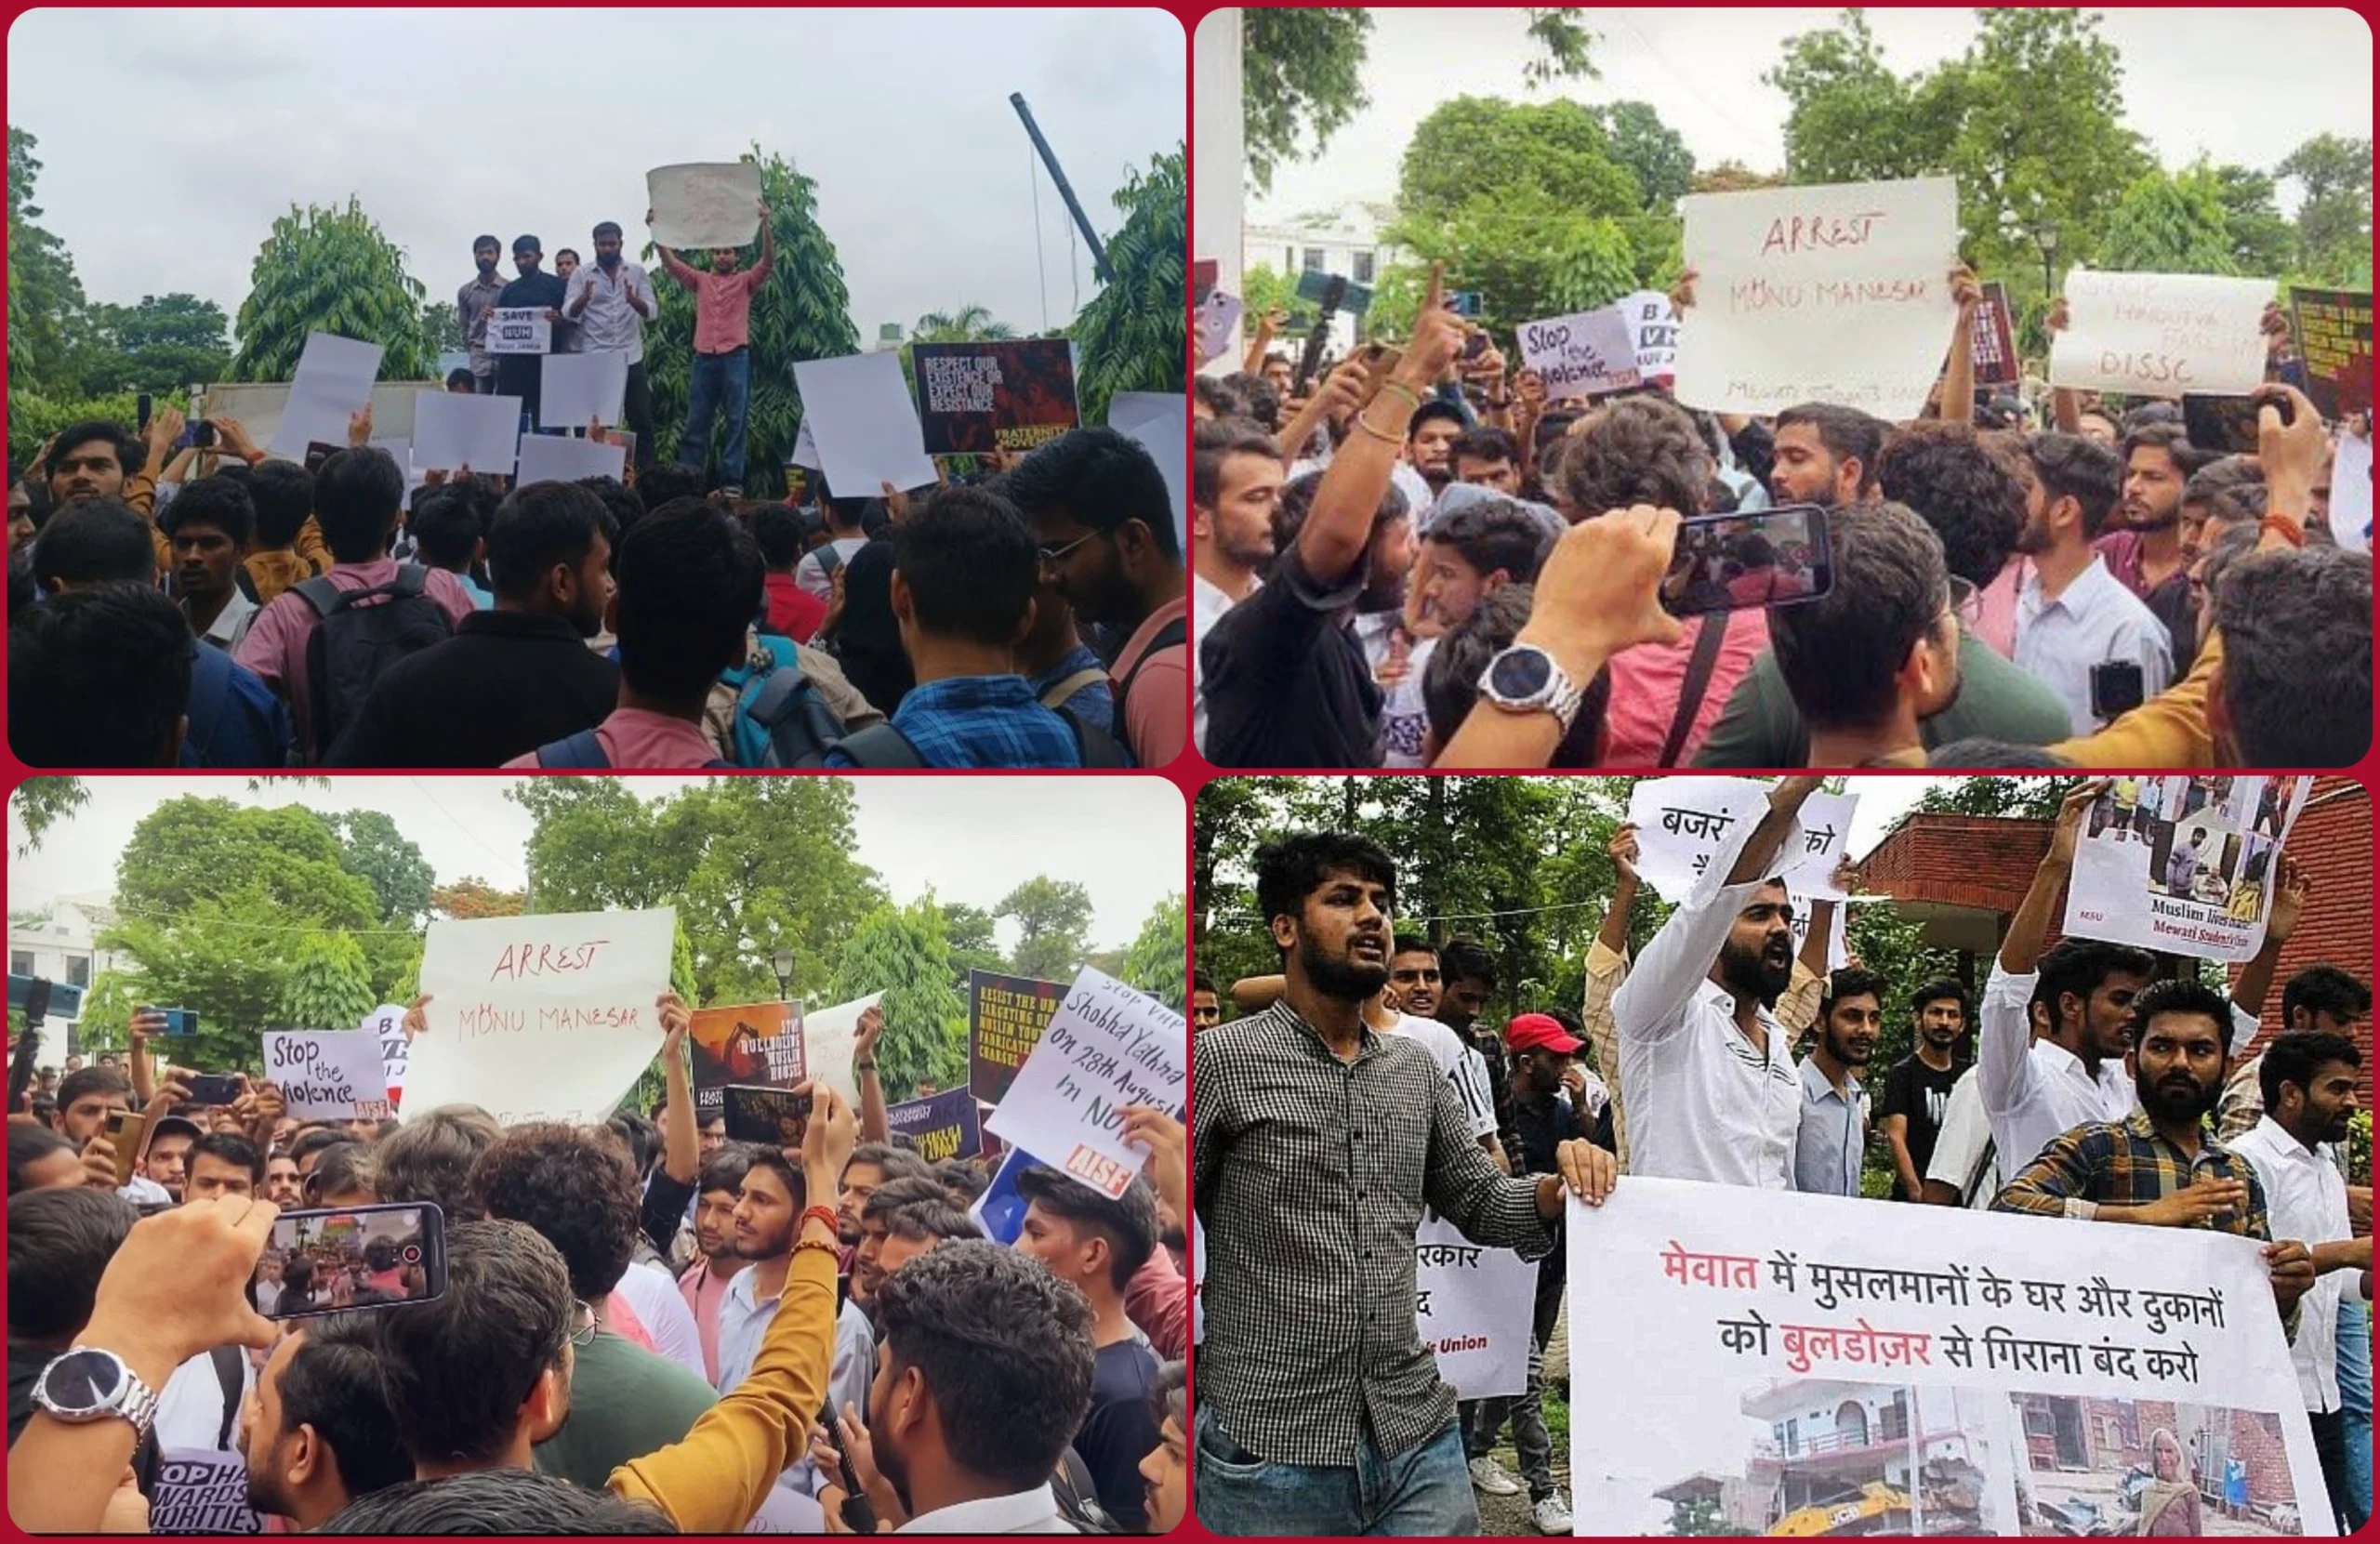 Jamia Millia Islamia Protest: جامعہ ملیہ اسلامیہ میں نوح تشدد کے خلاف احتجاجی مظاہرہ، بڑی تعداد میں پولیس فورس تعینات، آرایس ایس کے خلاف نعرے بازی